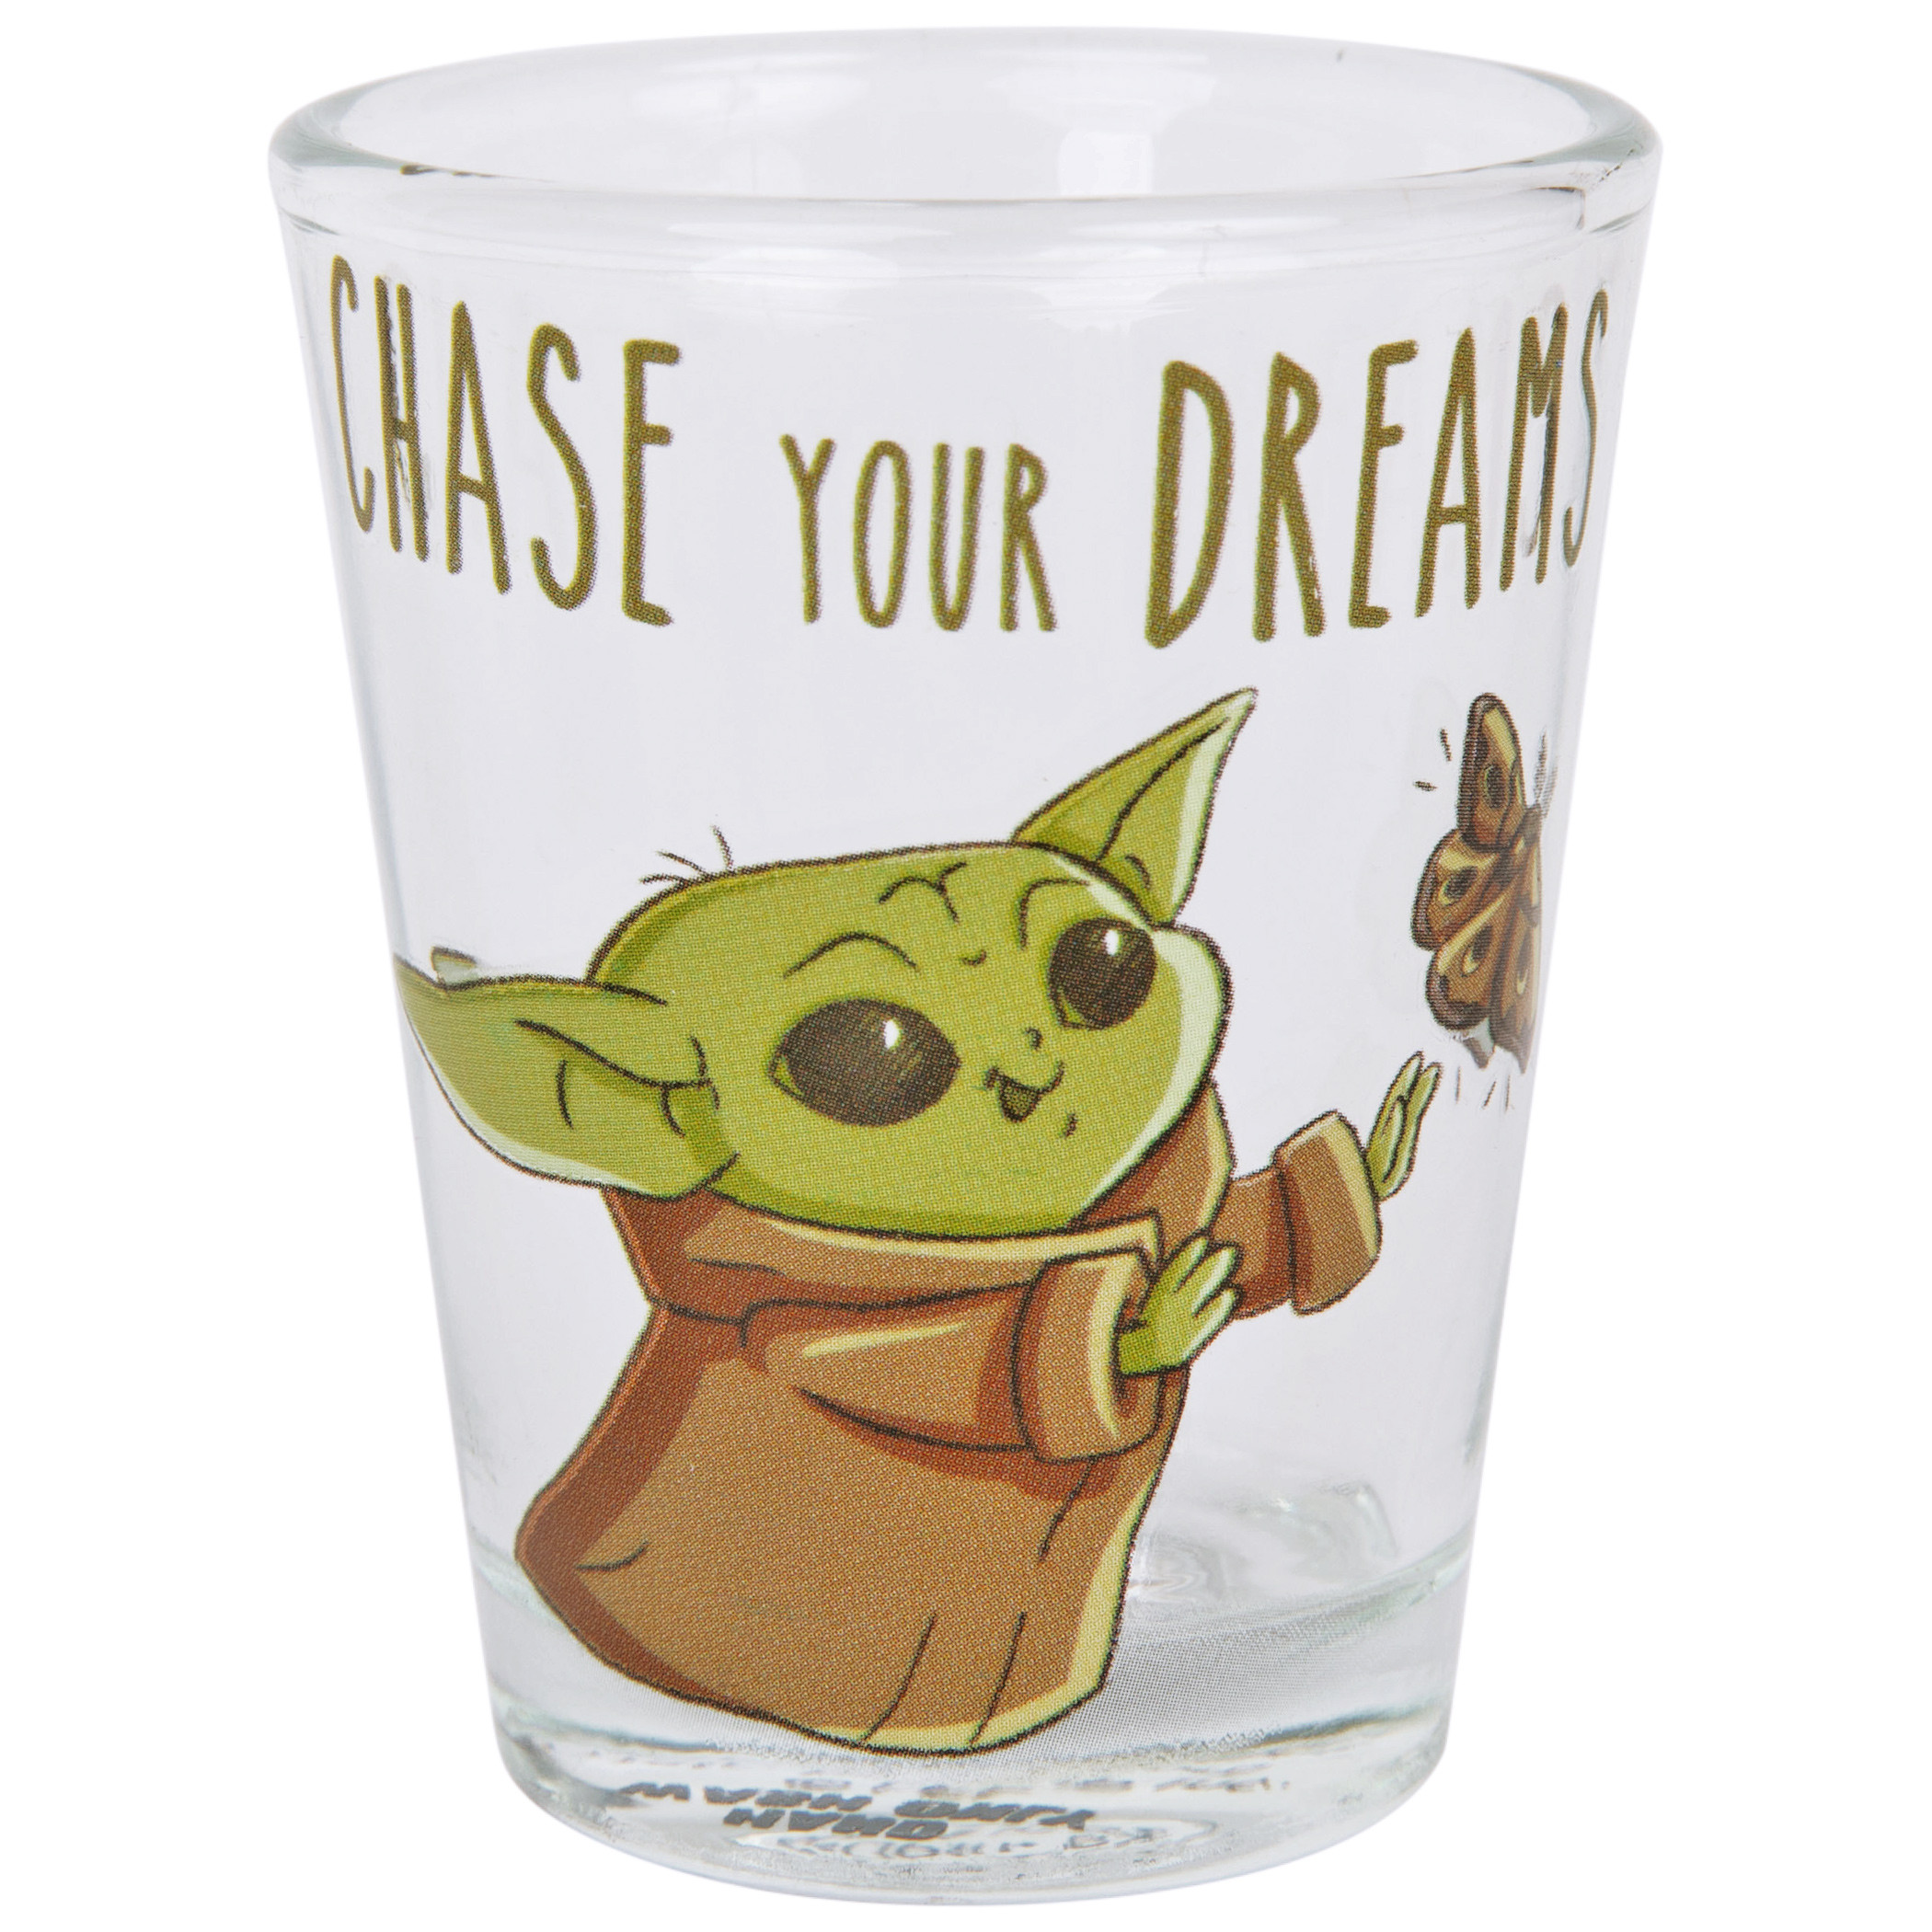 Star Wars The Mandalorian Grogu's Wisdom 4-Pack Mini Glass Set